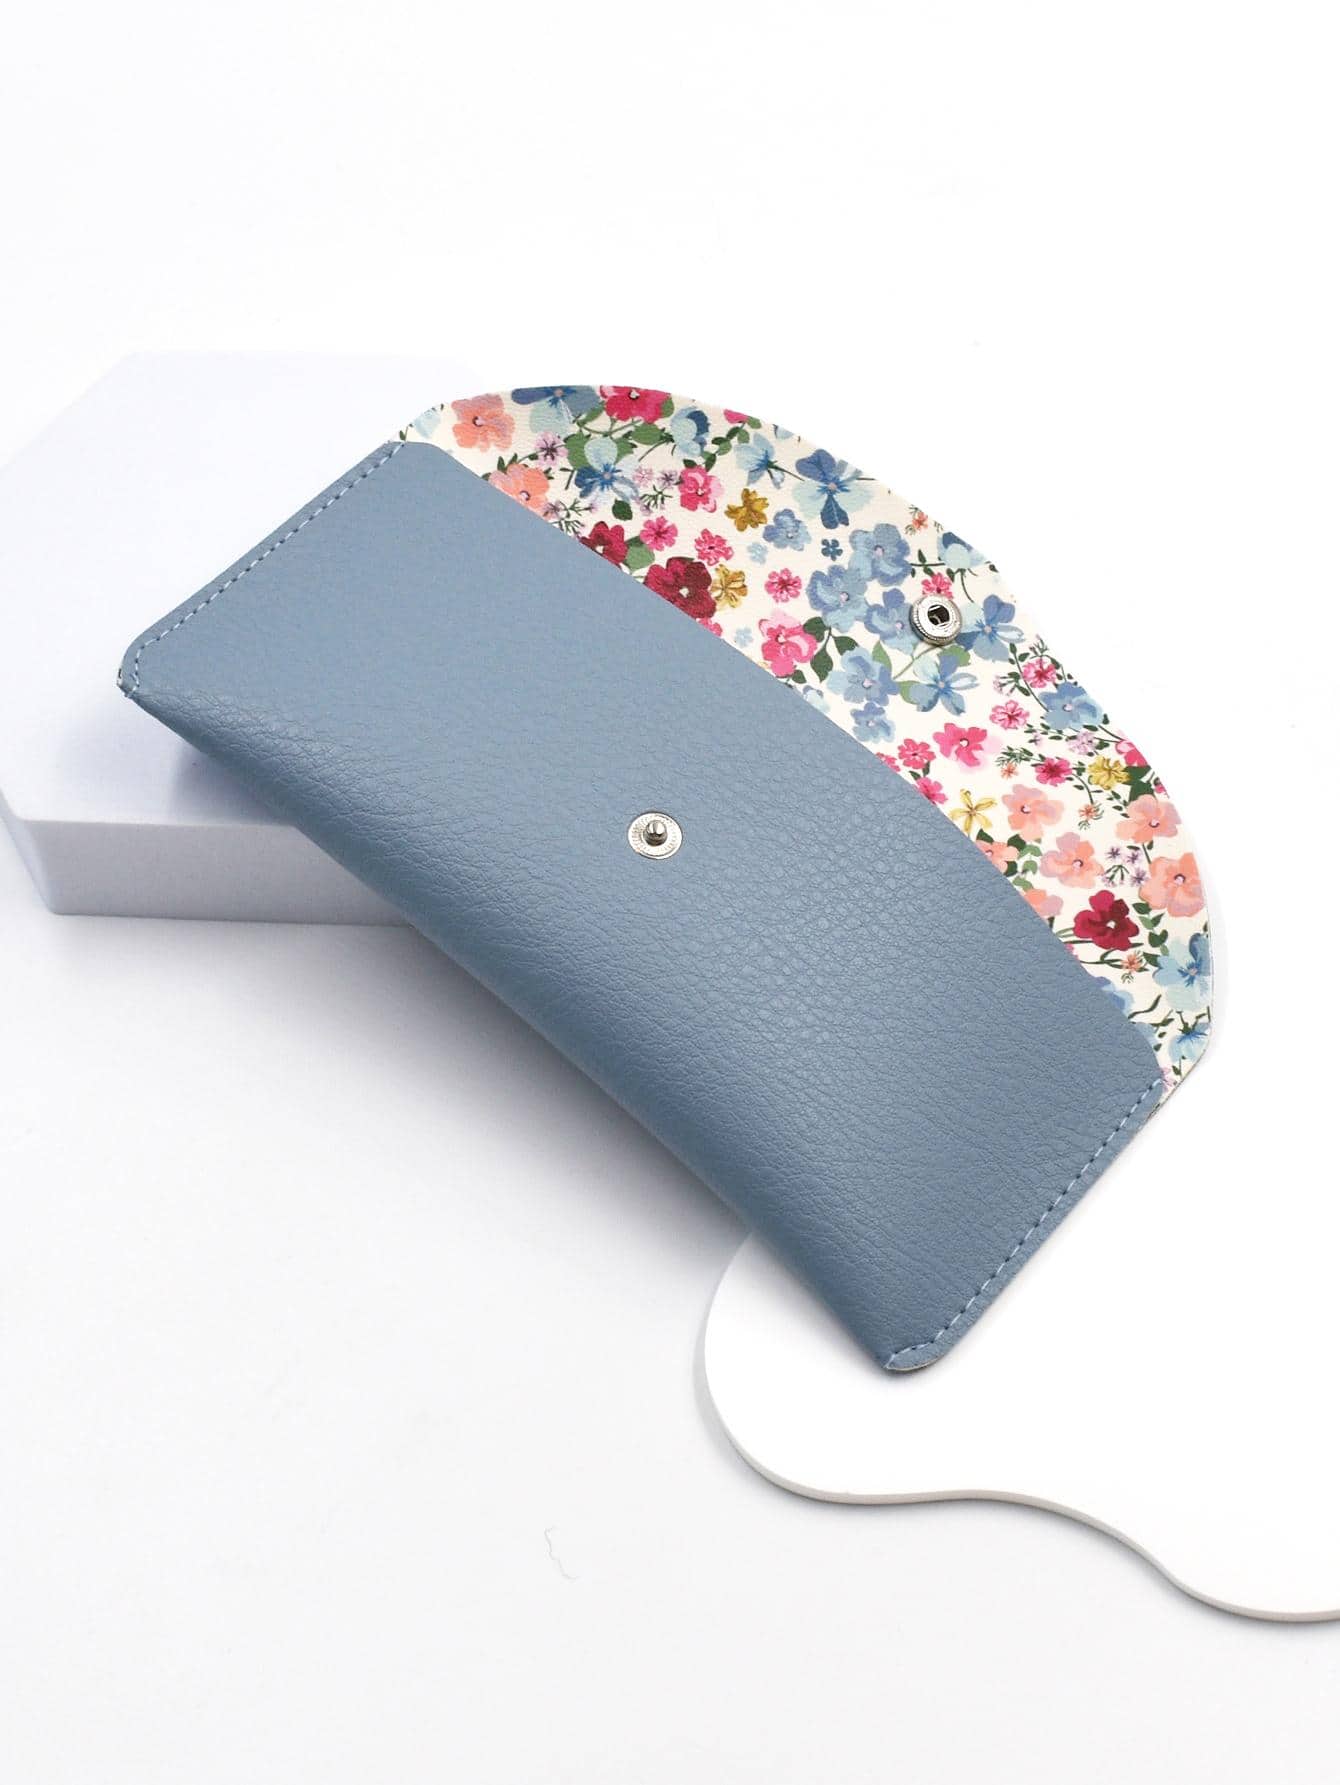 цена 1 шт. модная женская сумка ярких цветов с цветочным узором и кнопками, синий